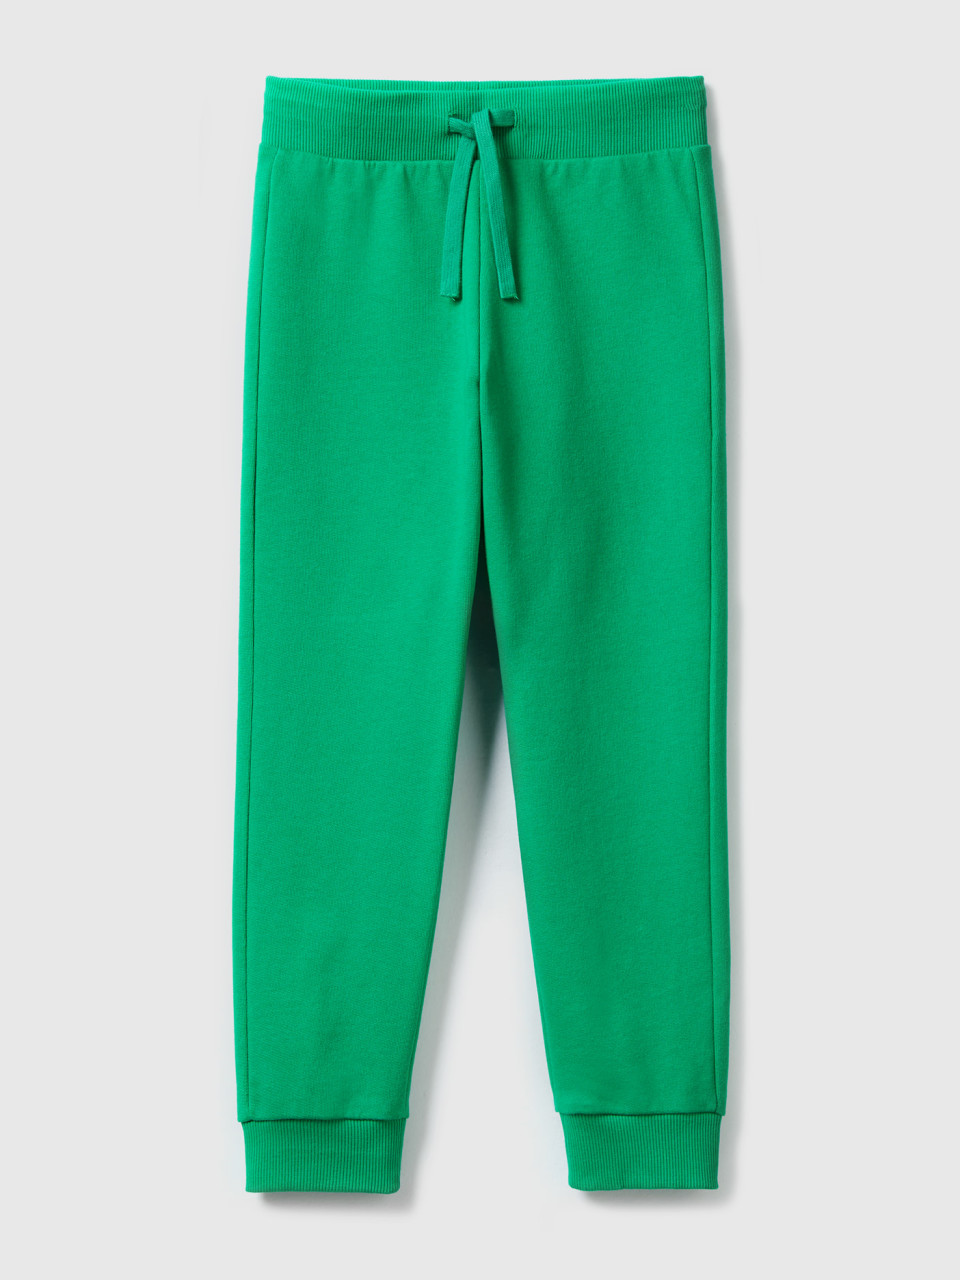 Benetton, Sportliche Hose Mit Tunnelzug, Grün, male